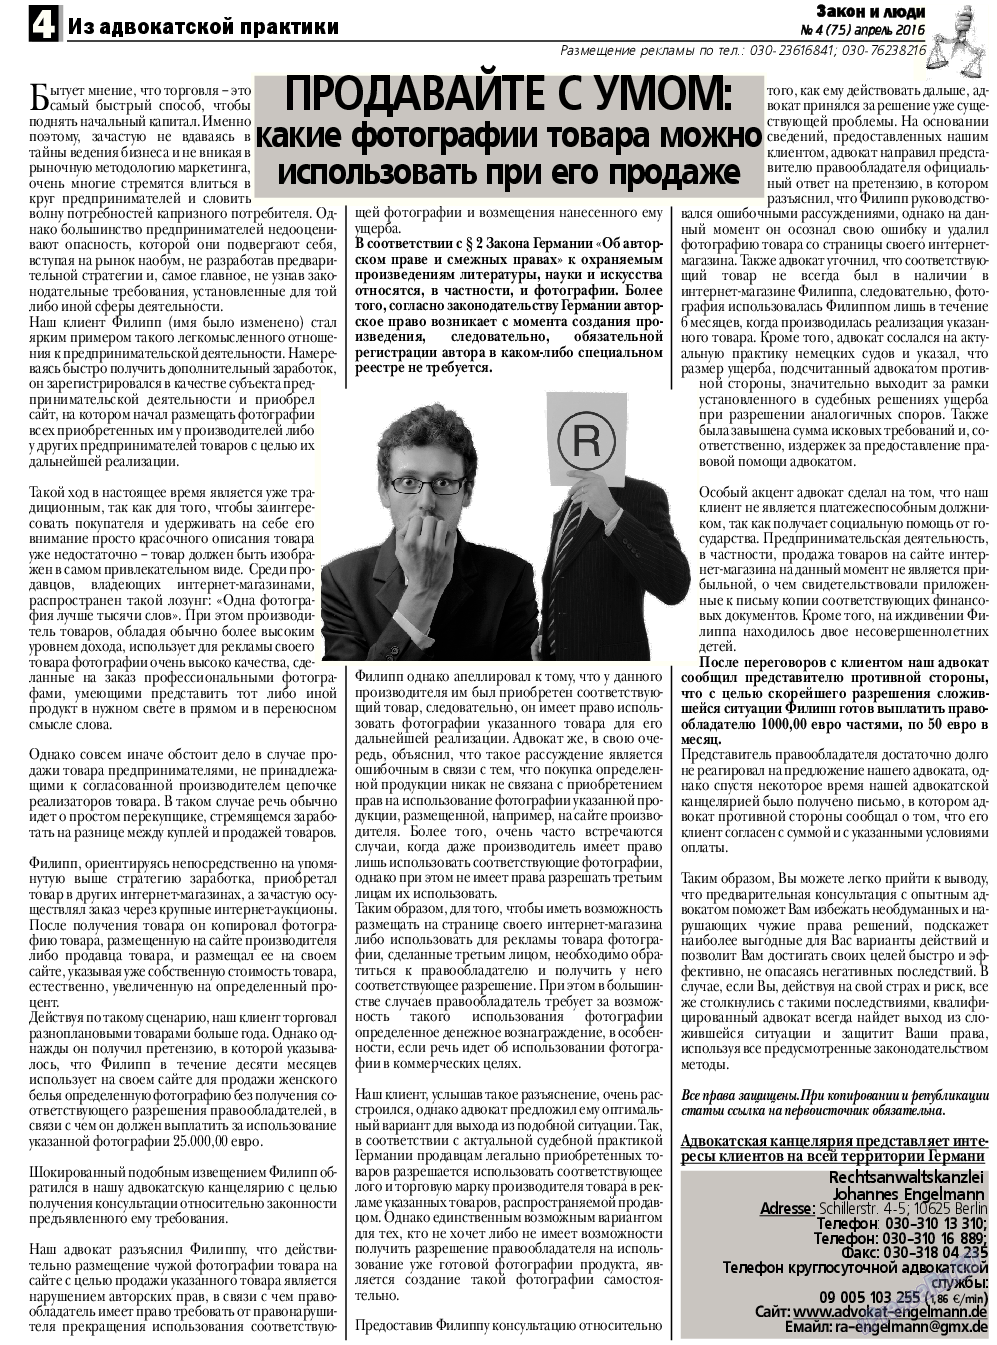 Закон и люди, газета. 2016 №4 стр.4